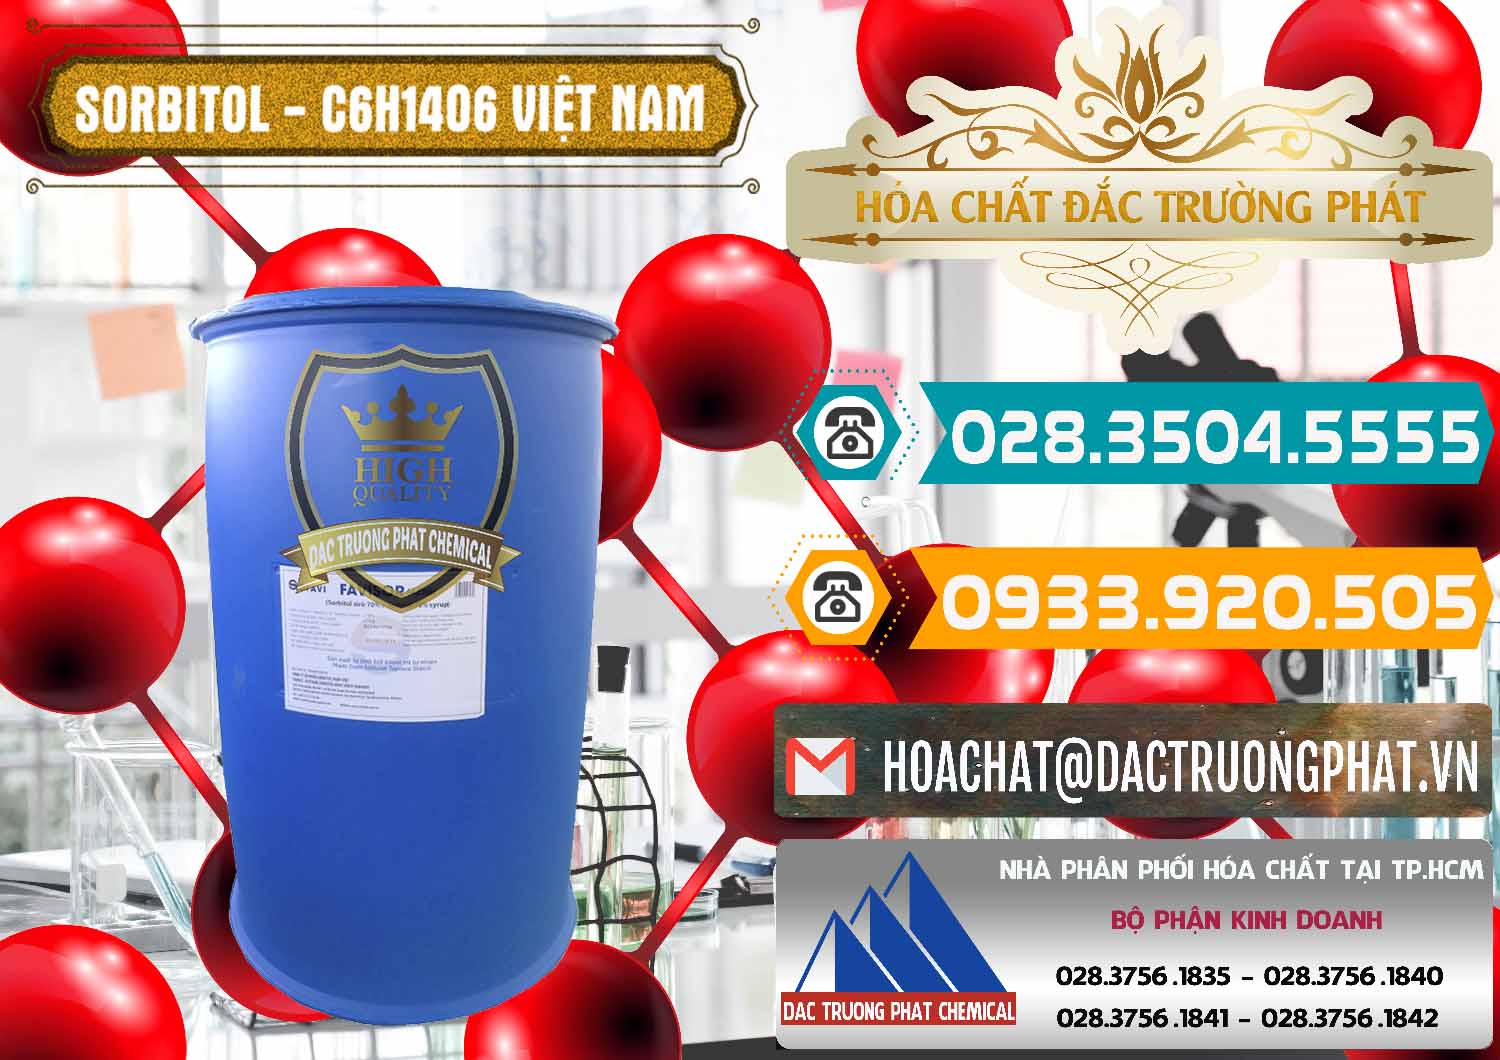 Cung cấp - phân phối Sorbitol - C6H14O6 Lỏng 70% Food Grade Việt Nam - 0438 - Chuyên bán và cung ứng hóa chất tại TP.HCM - congtyhoachat.vn